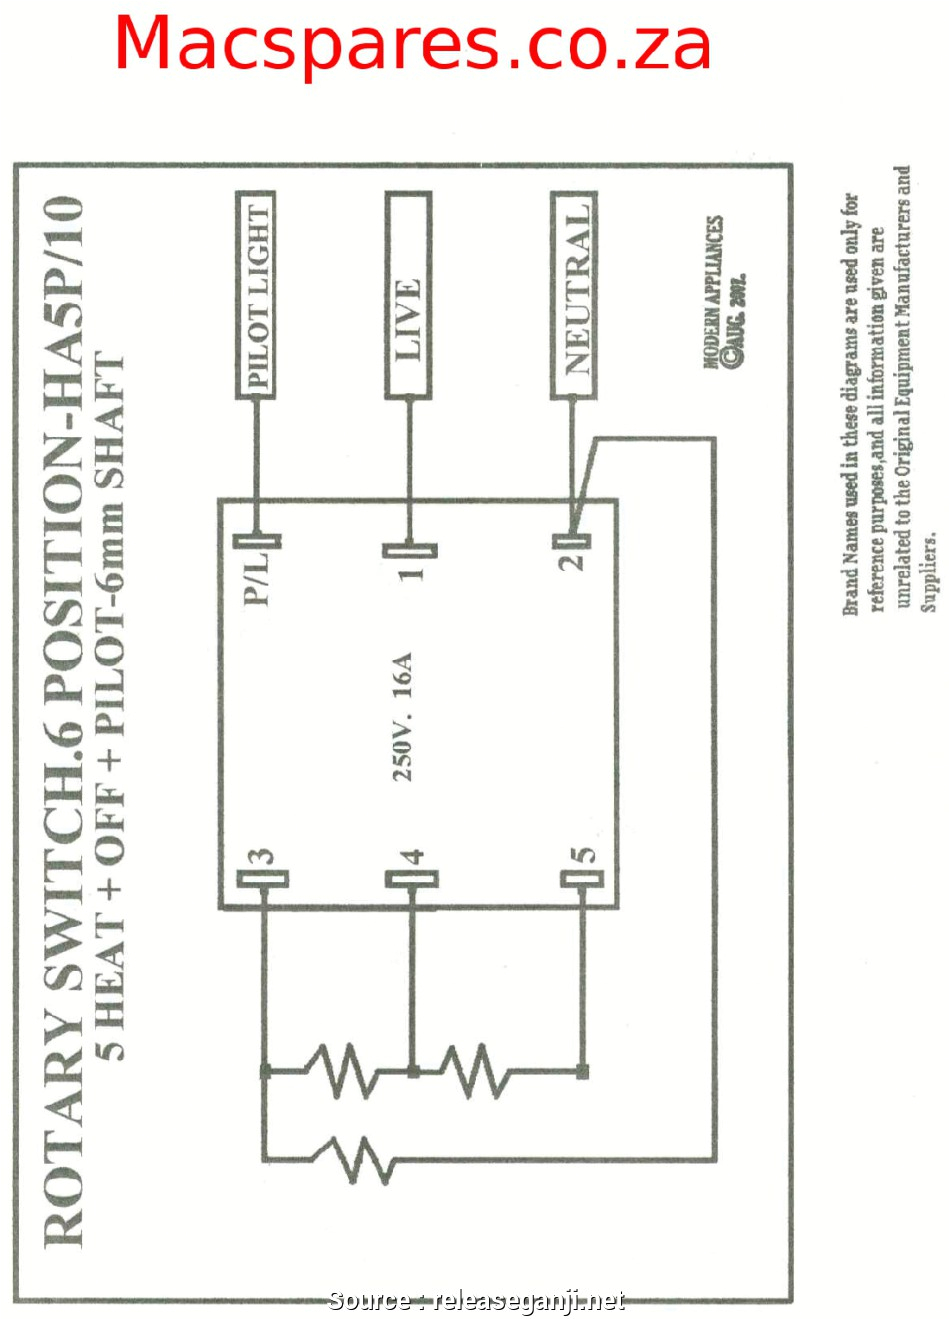 250v schematic wiring wiring diagram third level gif